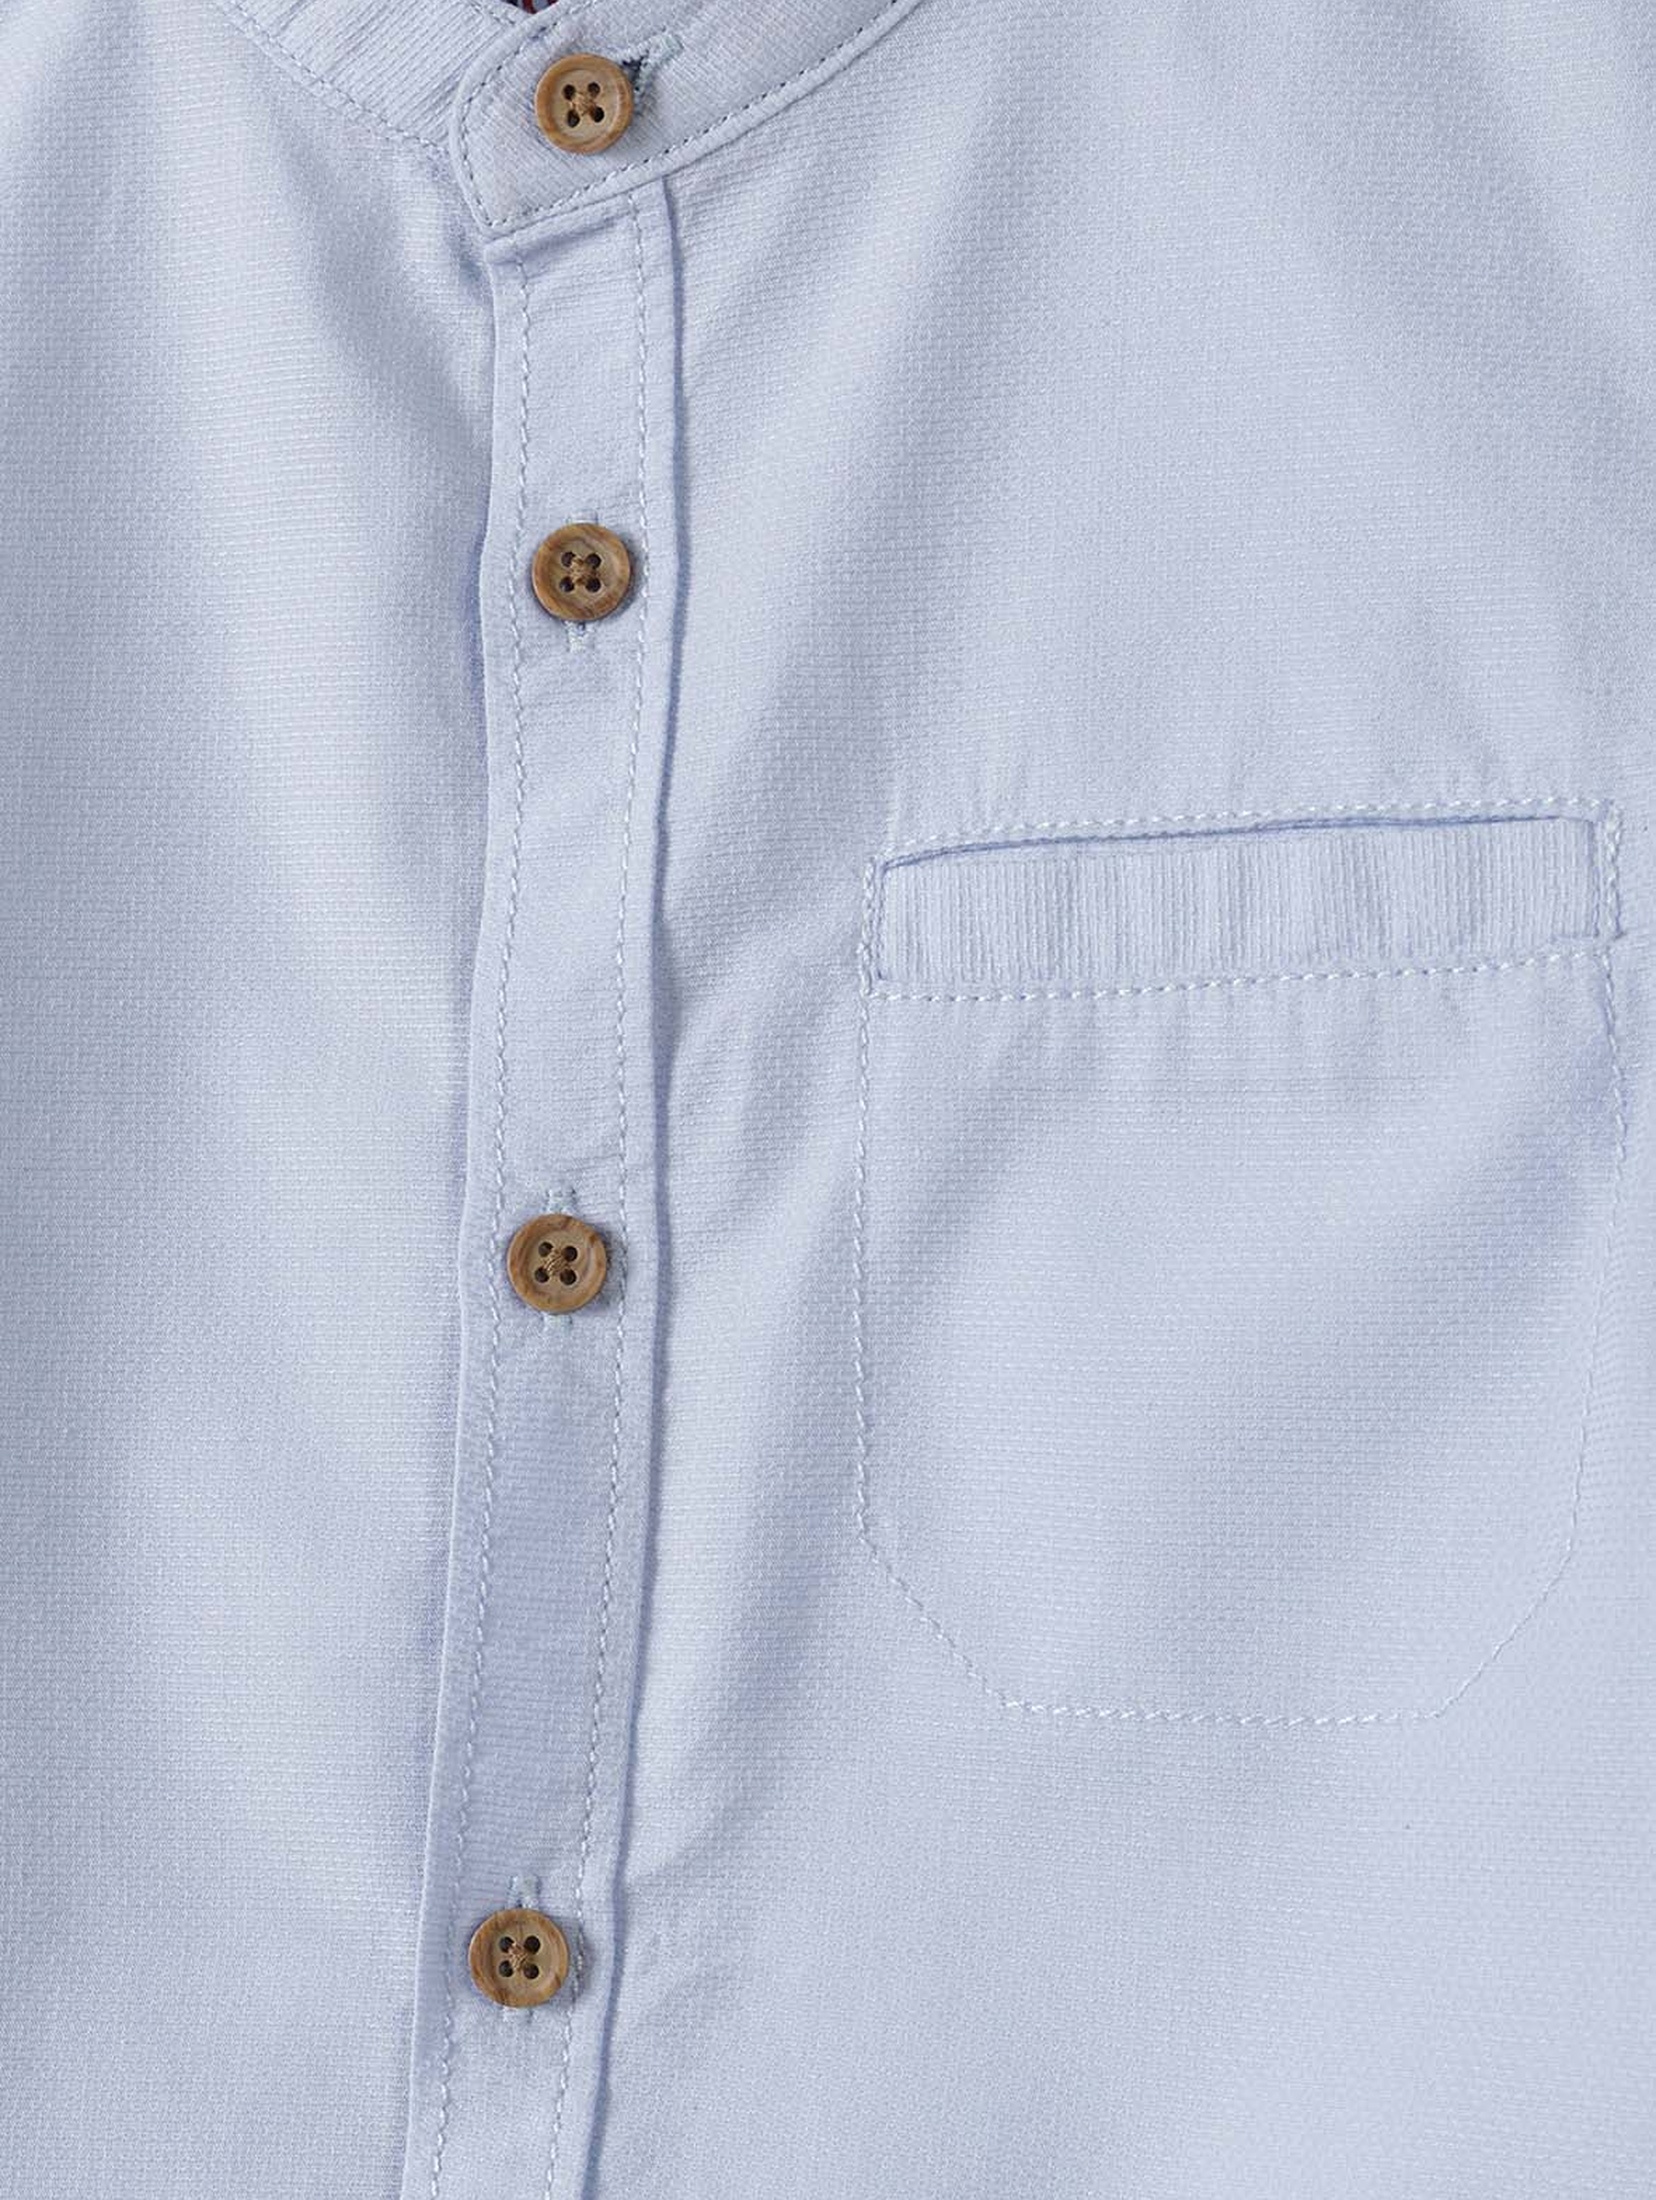 Koszula ze stójką i krótkim rękawem dla chłopca- błękitna